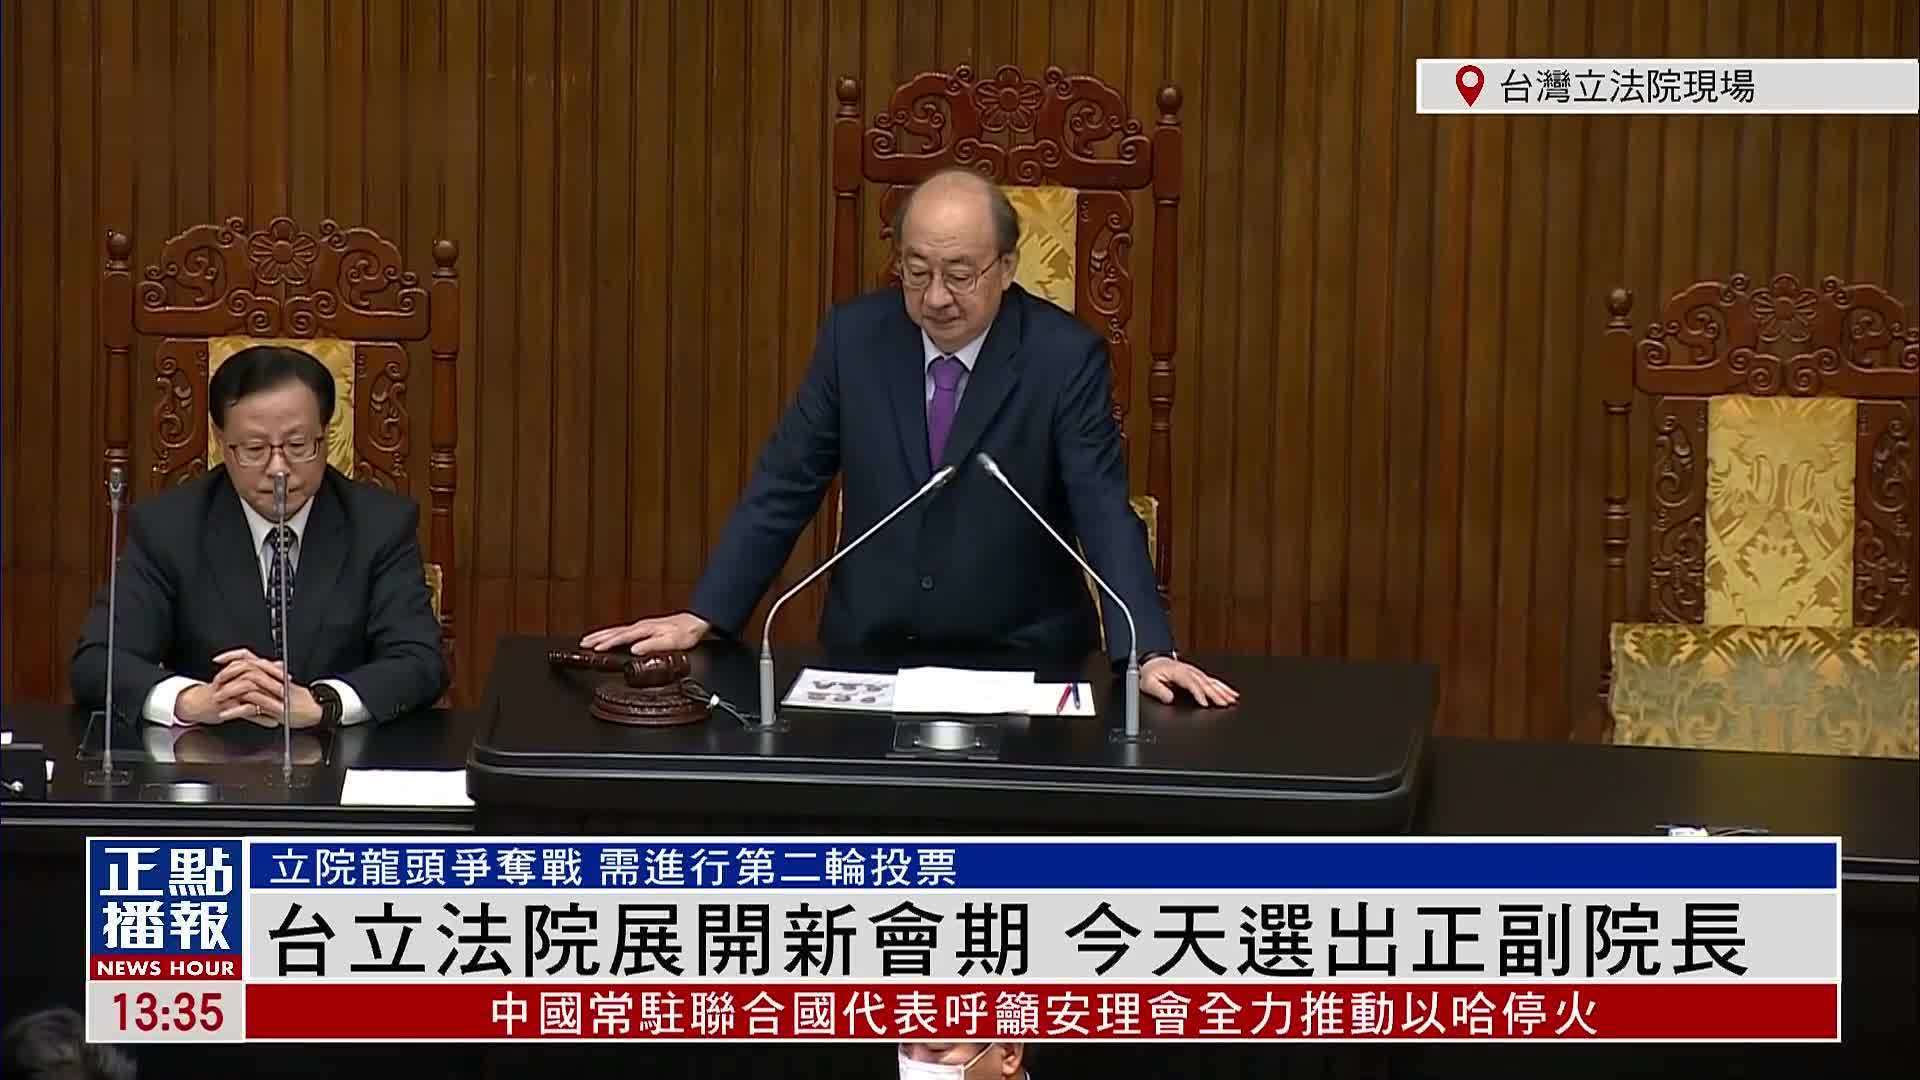 现场回顾台湾立法院展开新会期今天选出正副院长